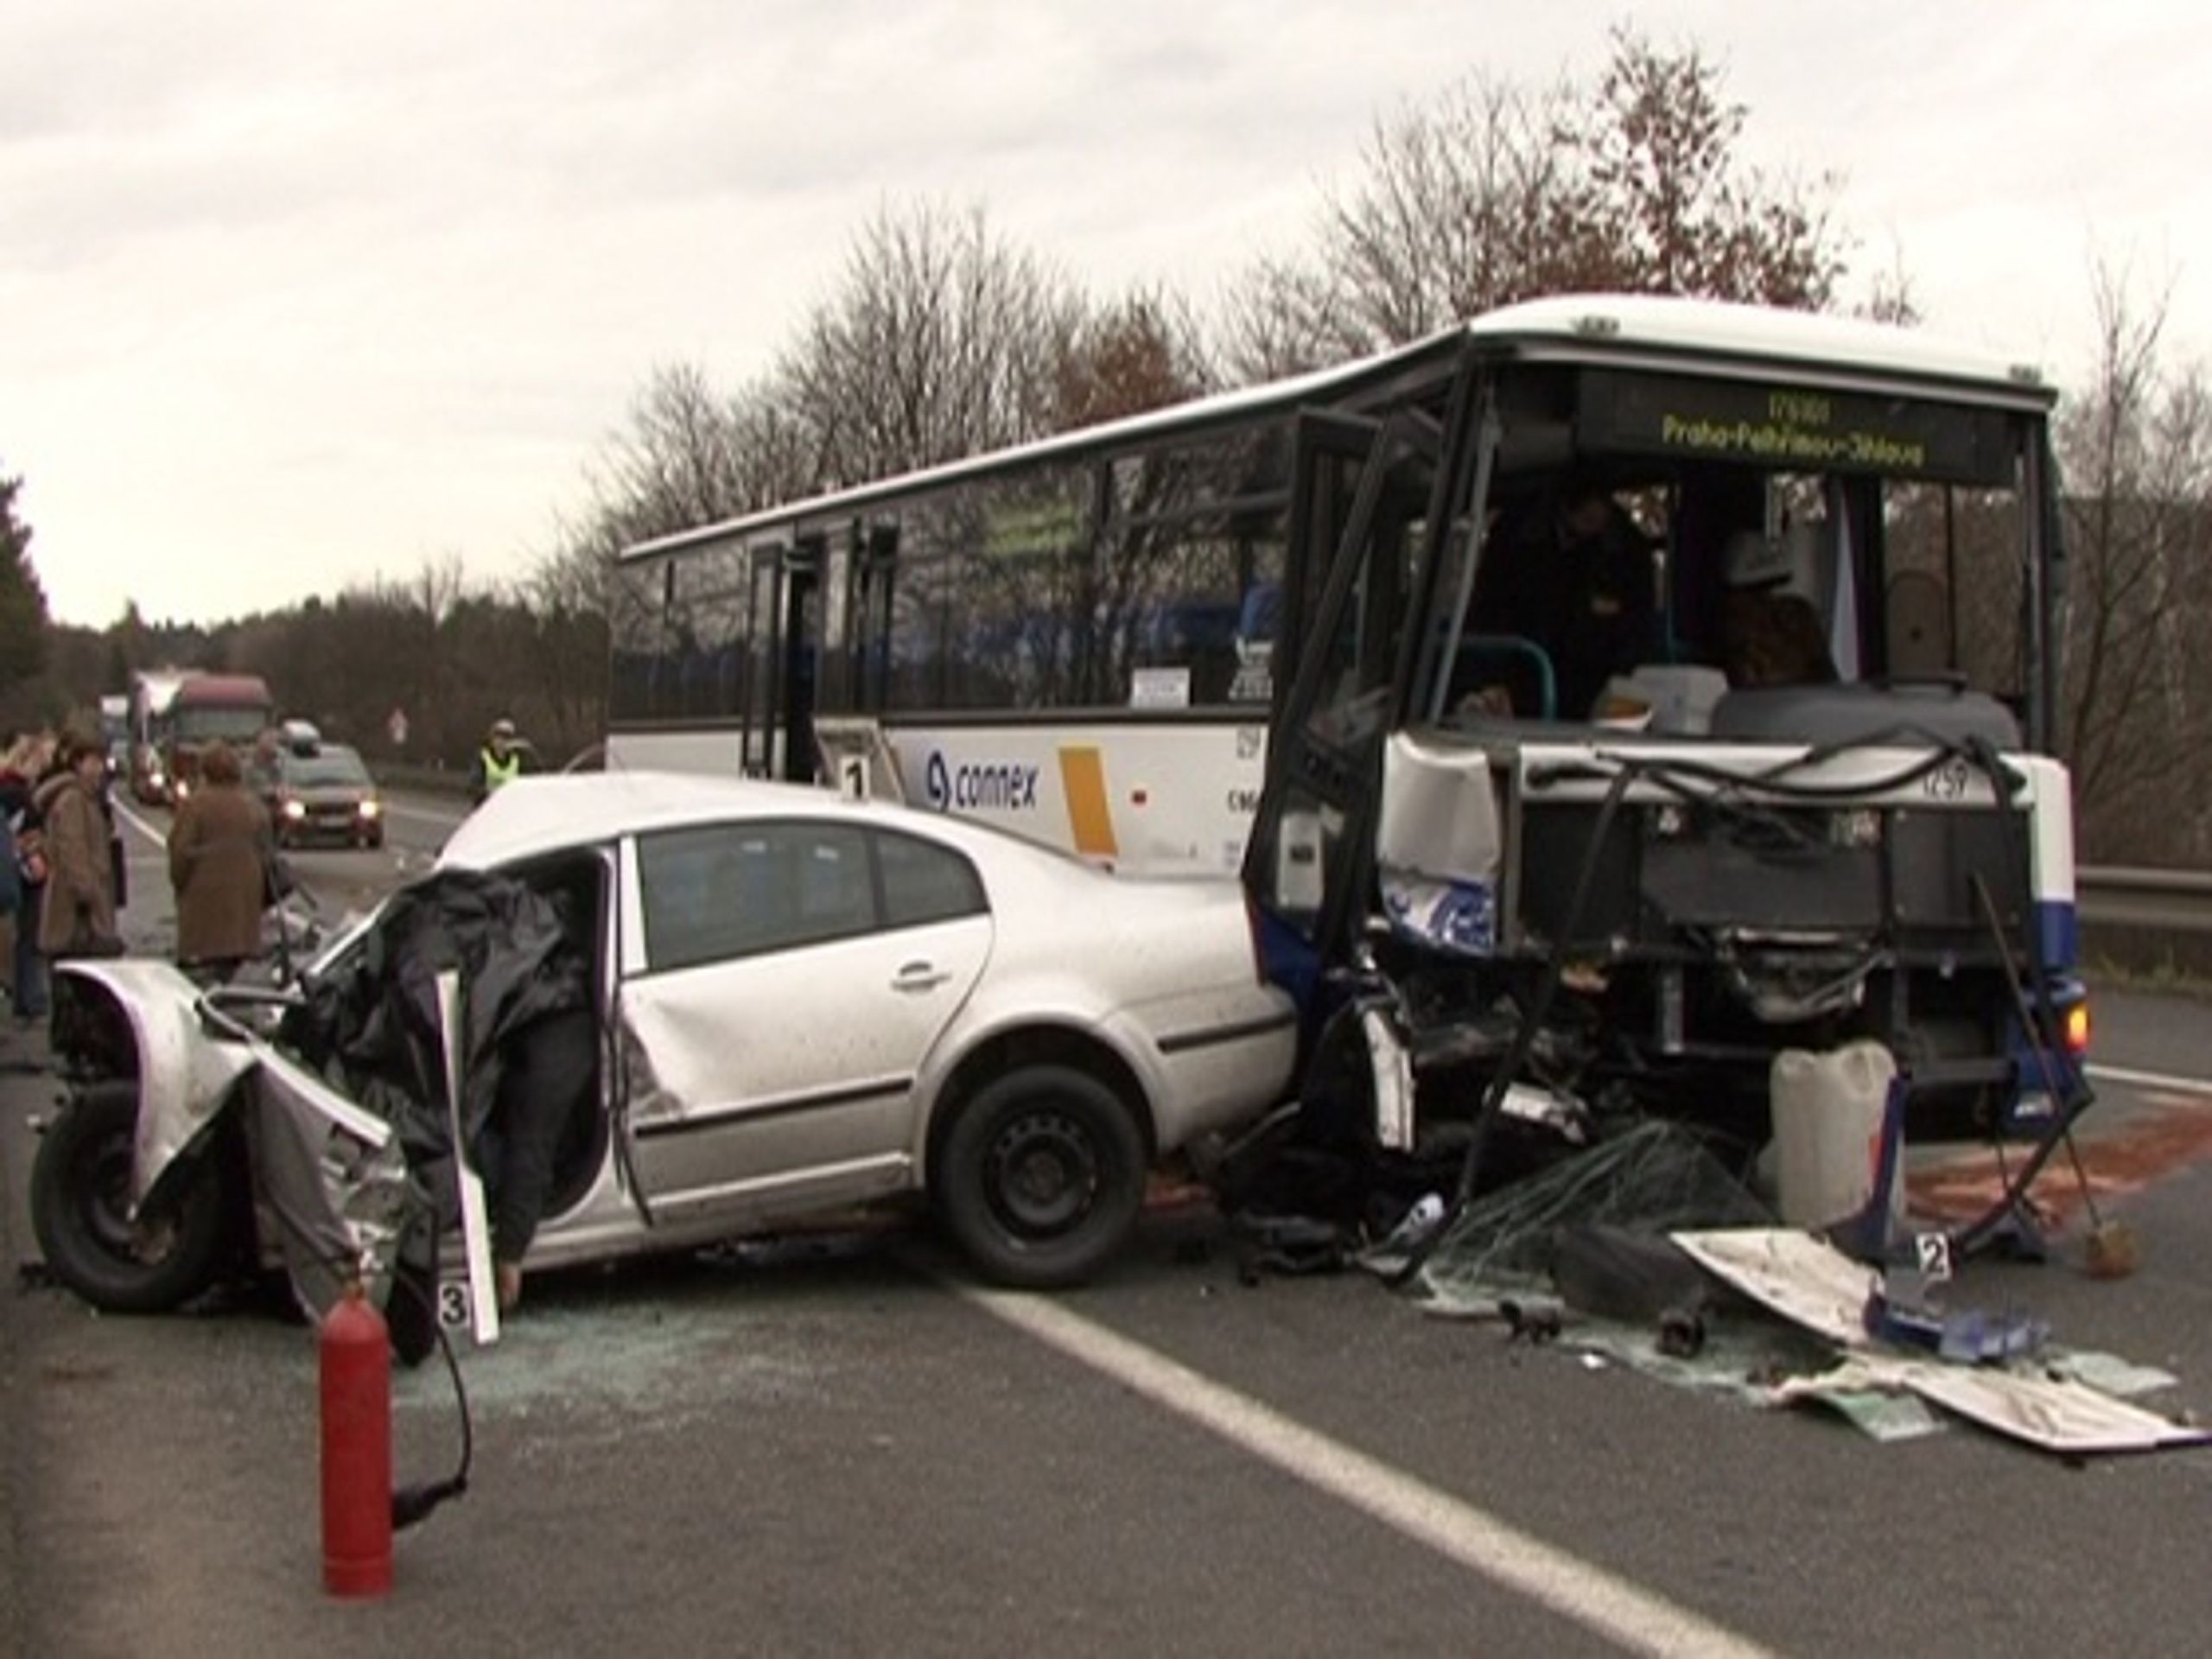 Tragická srážka auta s autobusem - Tragická nehoda - jeden mrtvý a 15 zraněných (1/3)